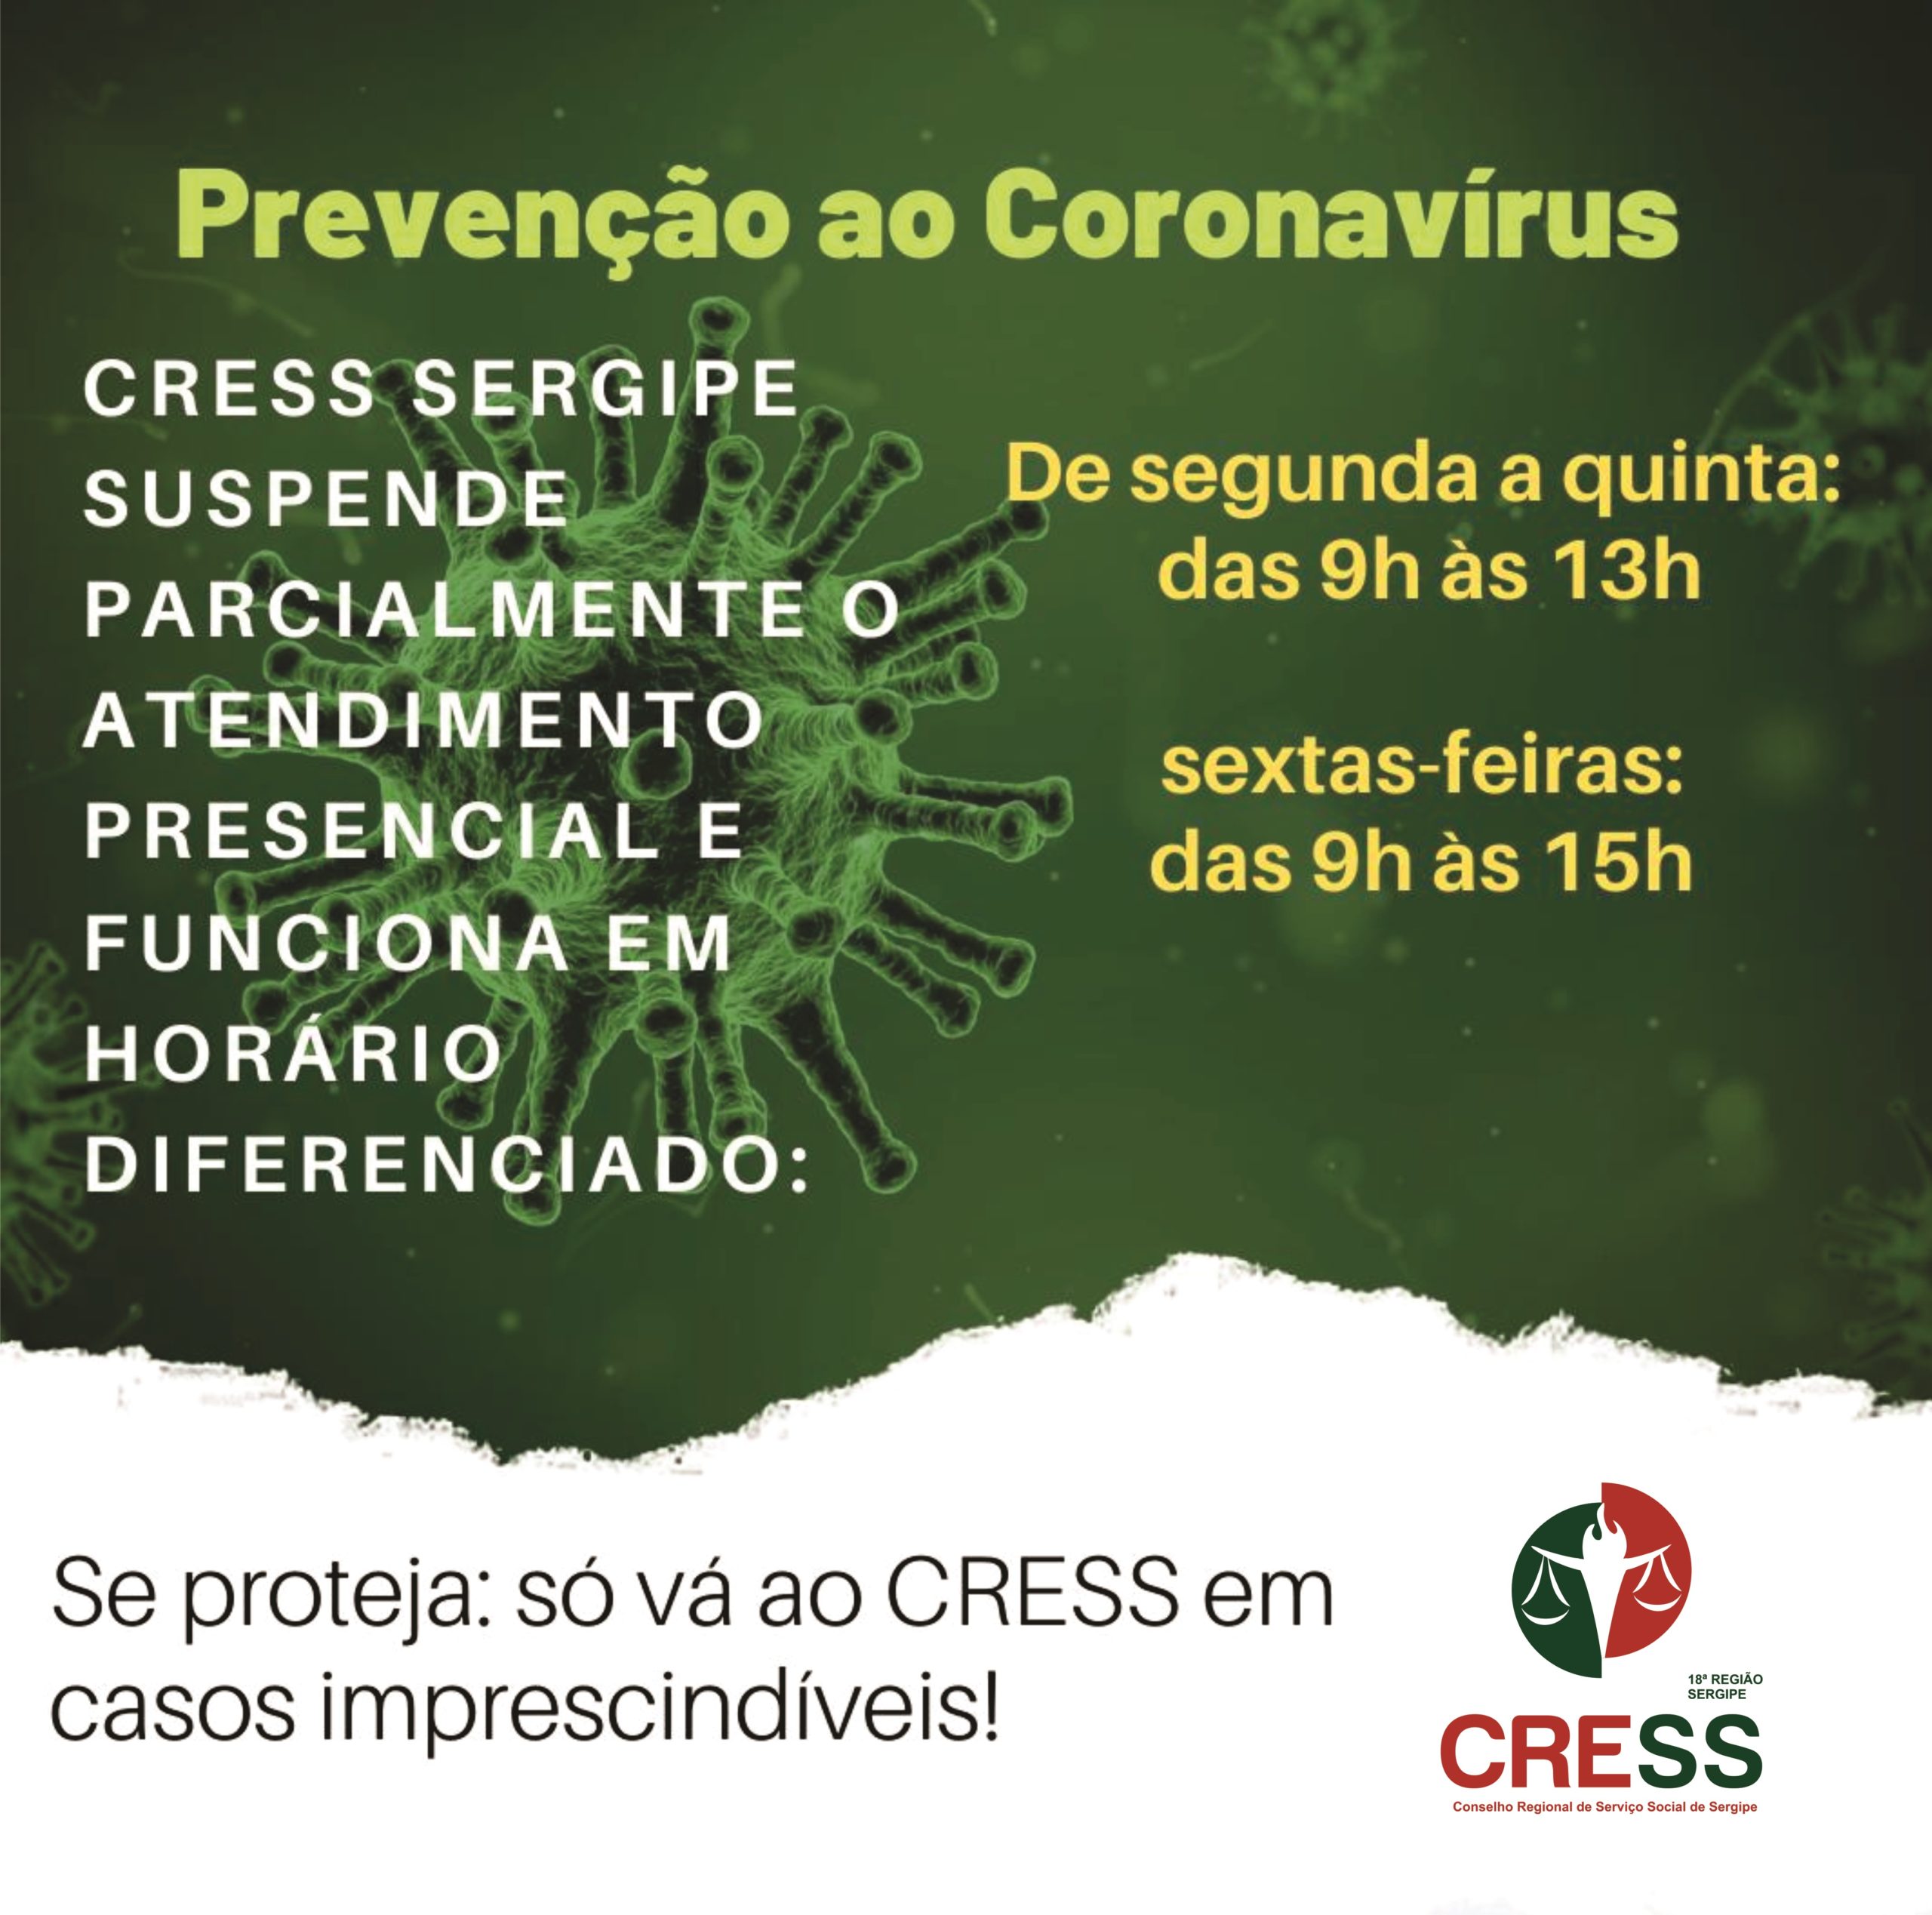 CRESS Sergipe modifica horário de funcionamento devido à pandemia do Coronavírus